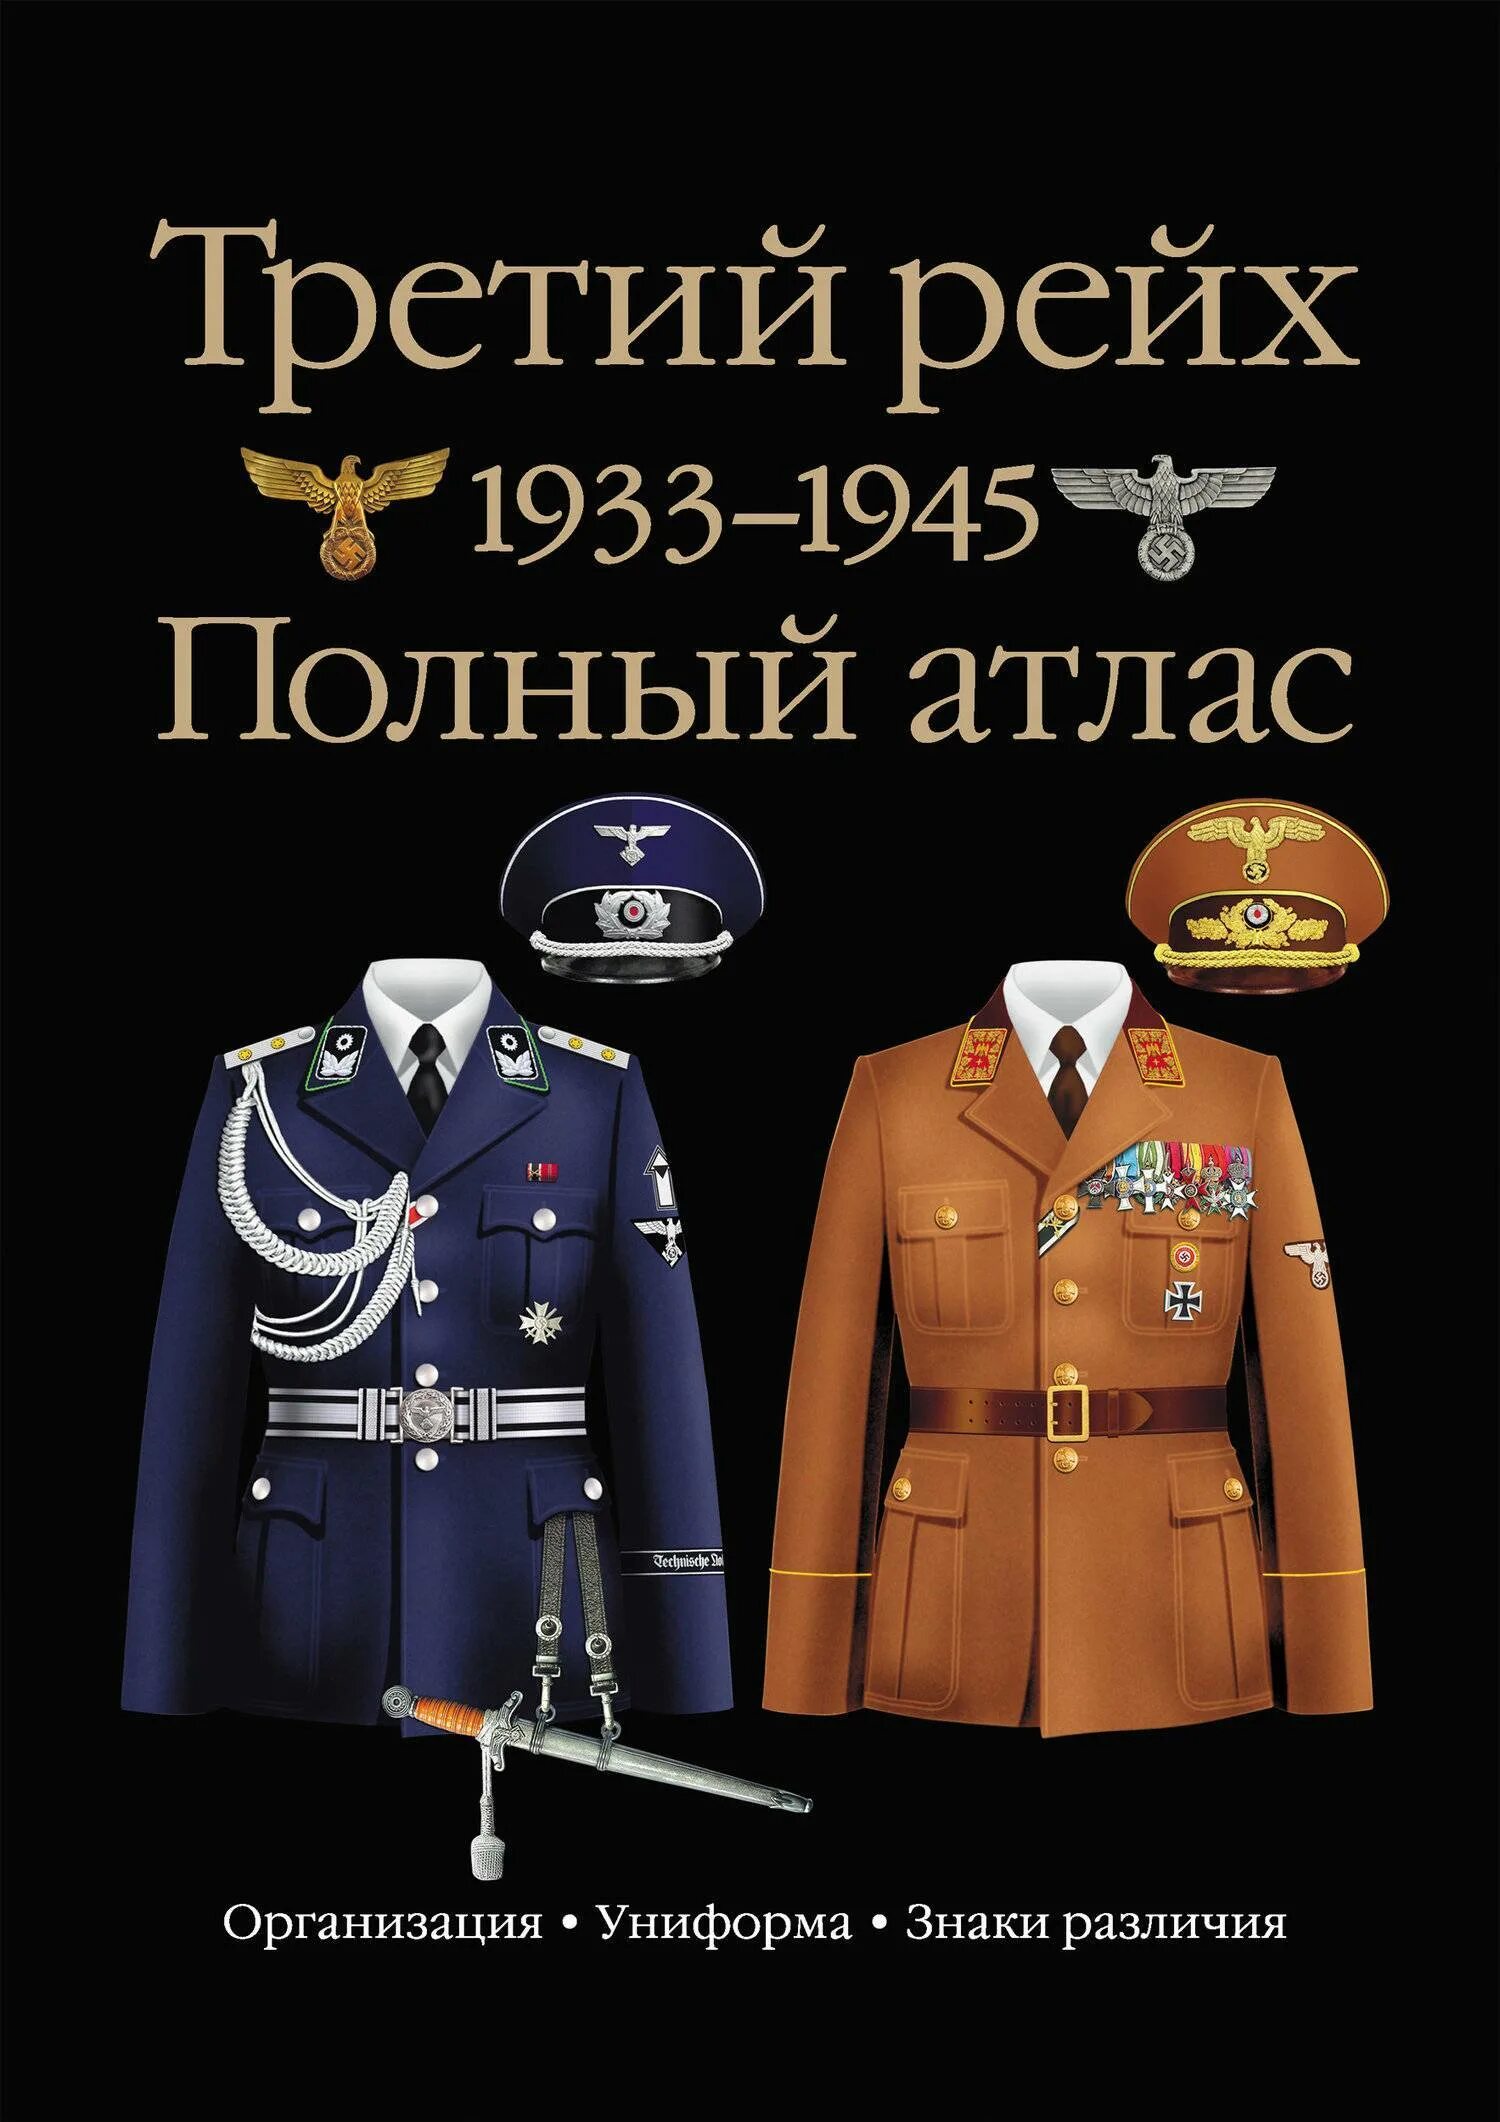 Купить книгу третий рейх. Униформа третьего рейха 1933-1945. Полный атлас униформы третьего рейха.